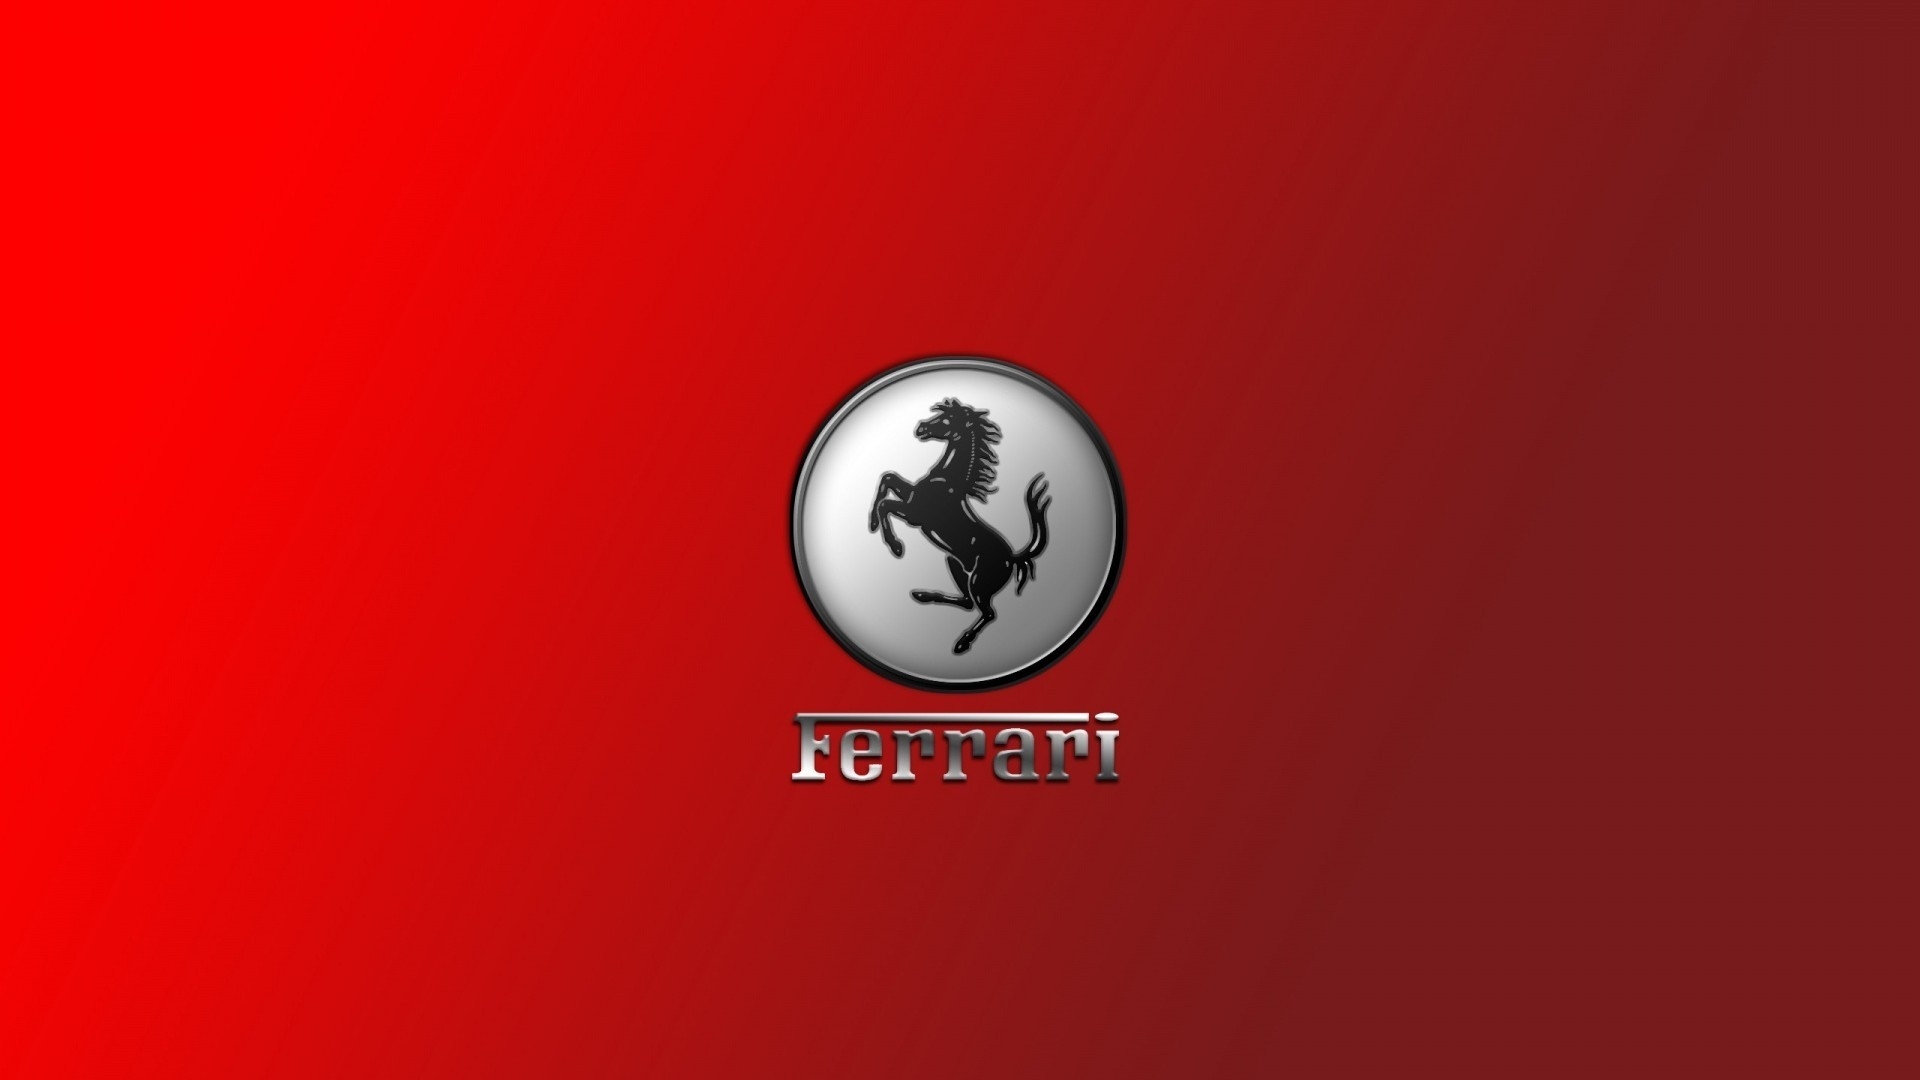 Gorgeous Ferrari Logo for 1920 x 1080 HDTV 1080p resolution